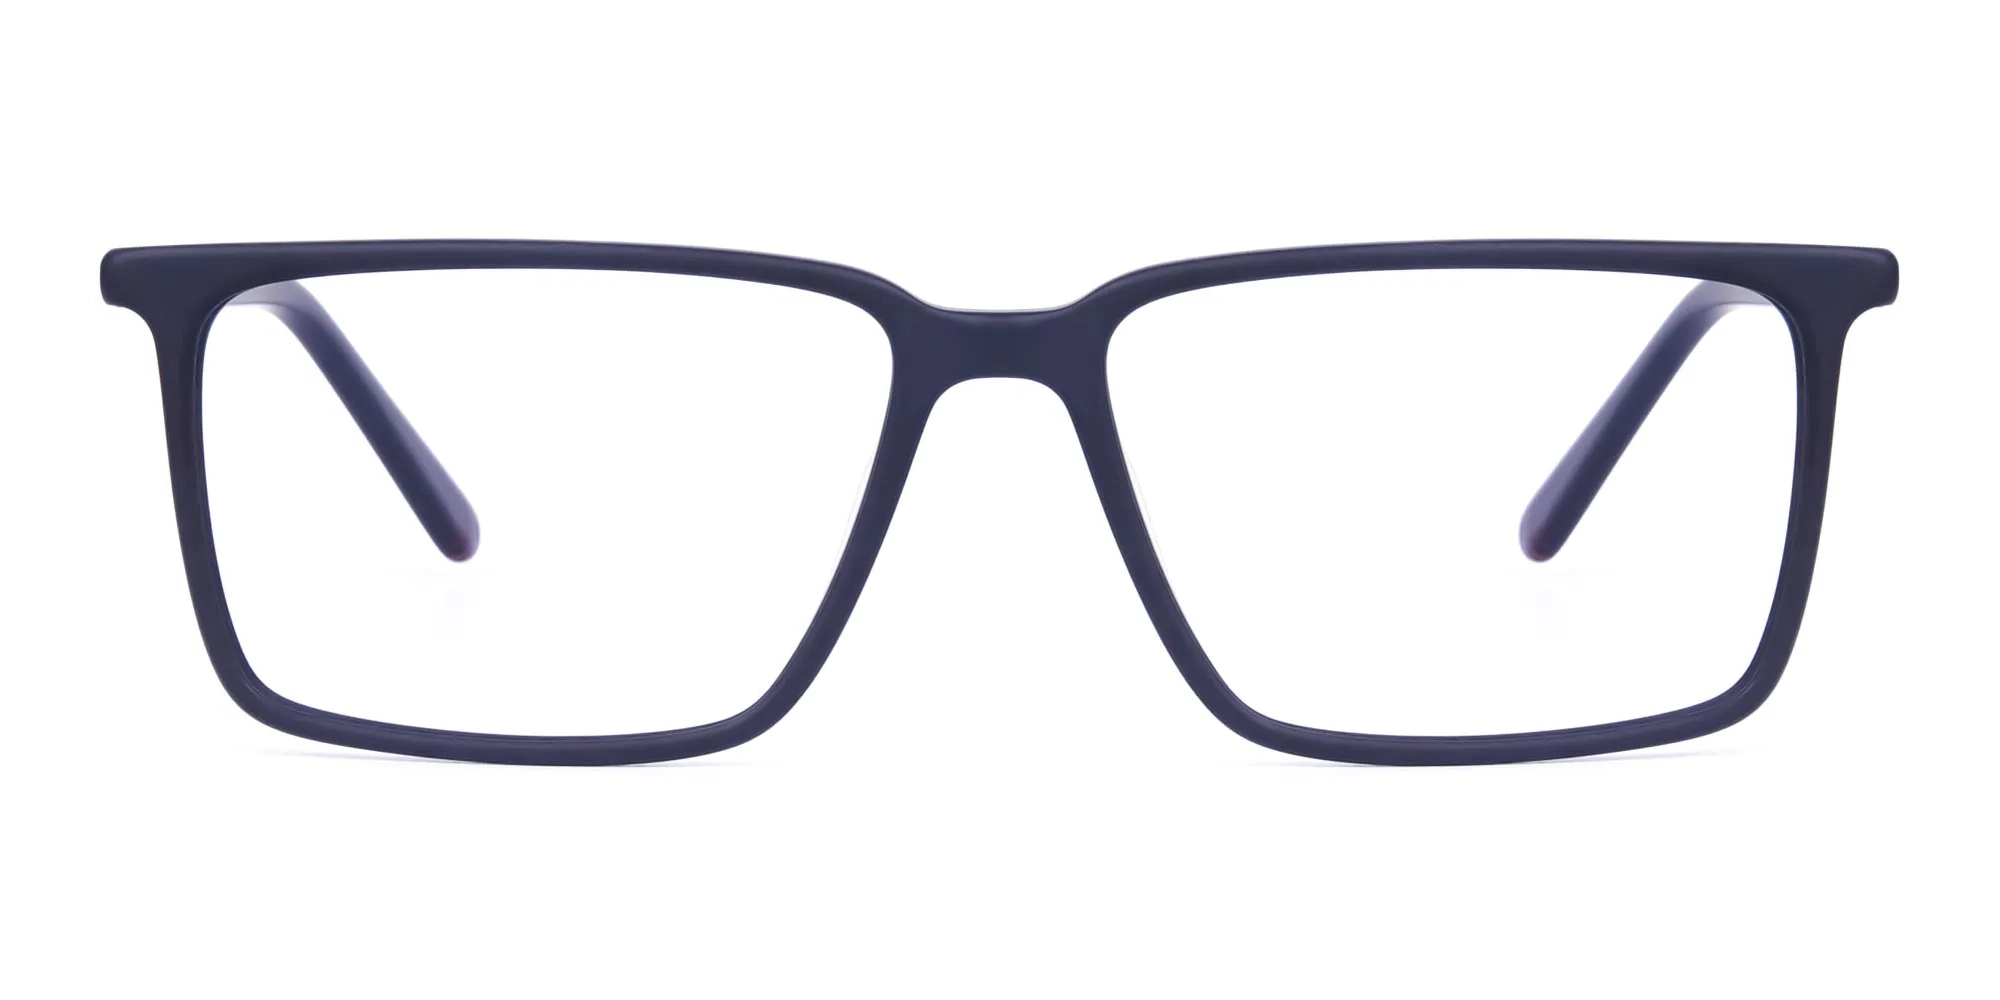 Matte-Black-Fully-Rimmed-Rectangular-Glasses-2